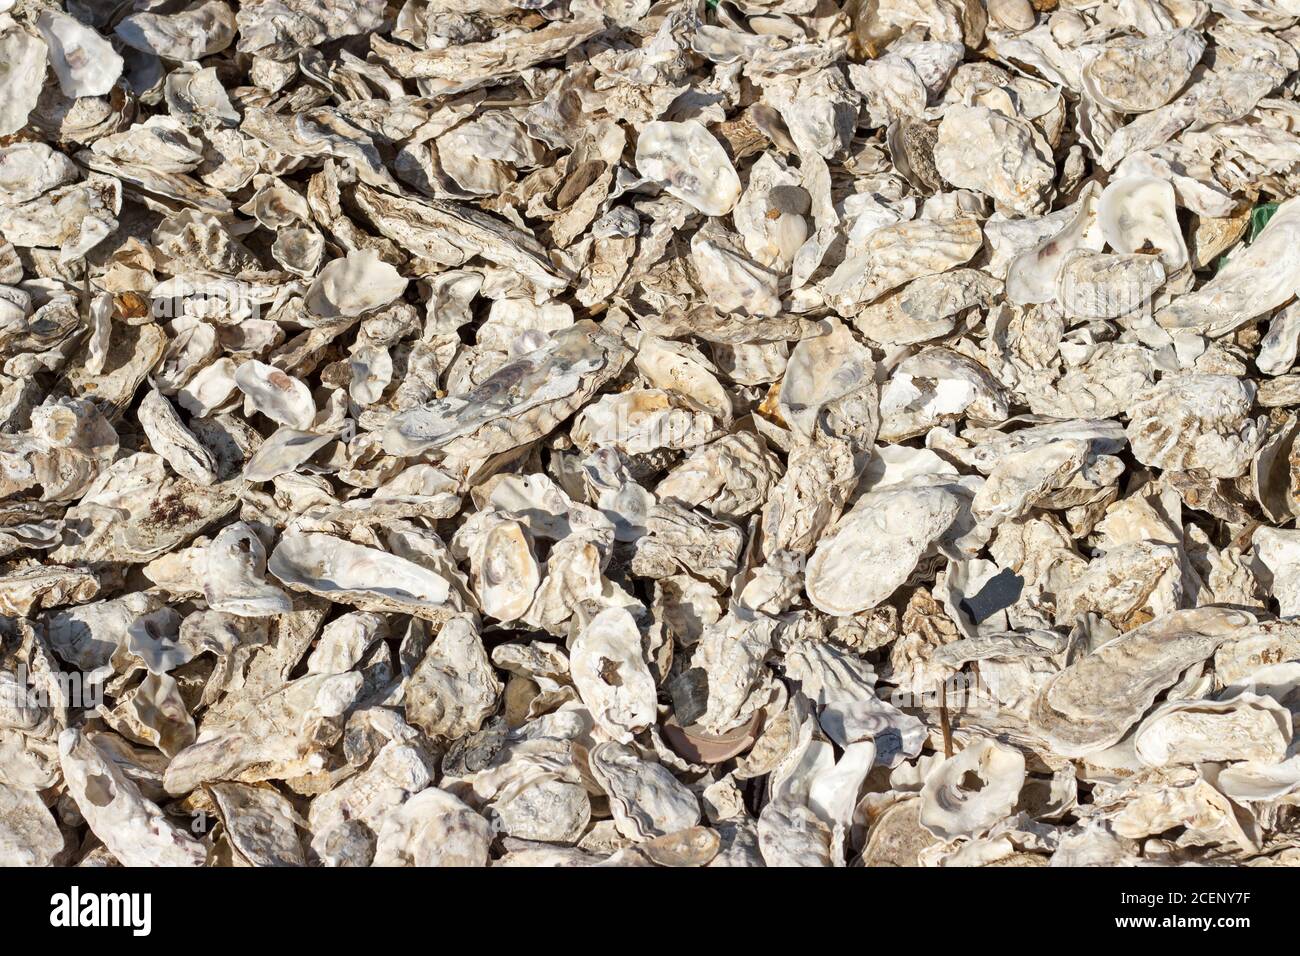 Muchas conchas de ostras arrojadas por la tormenta en el closeup de la costa. Foto de stock